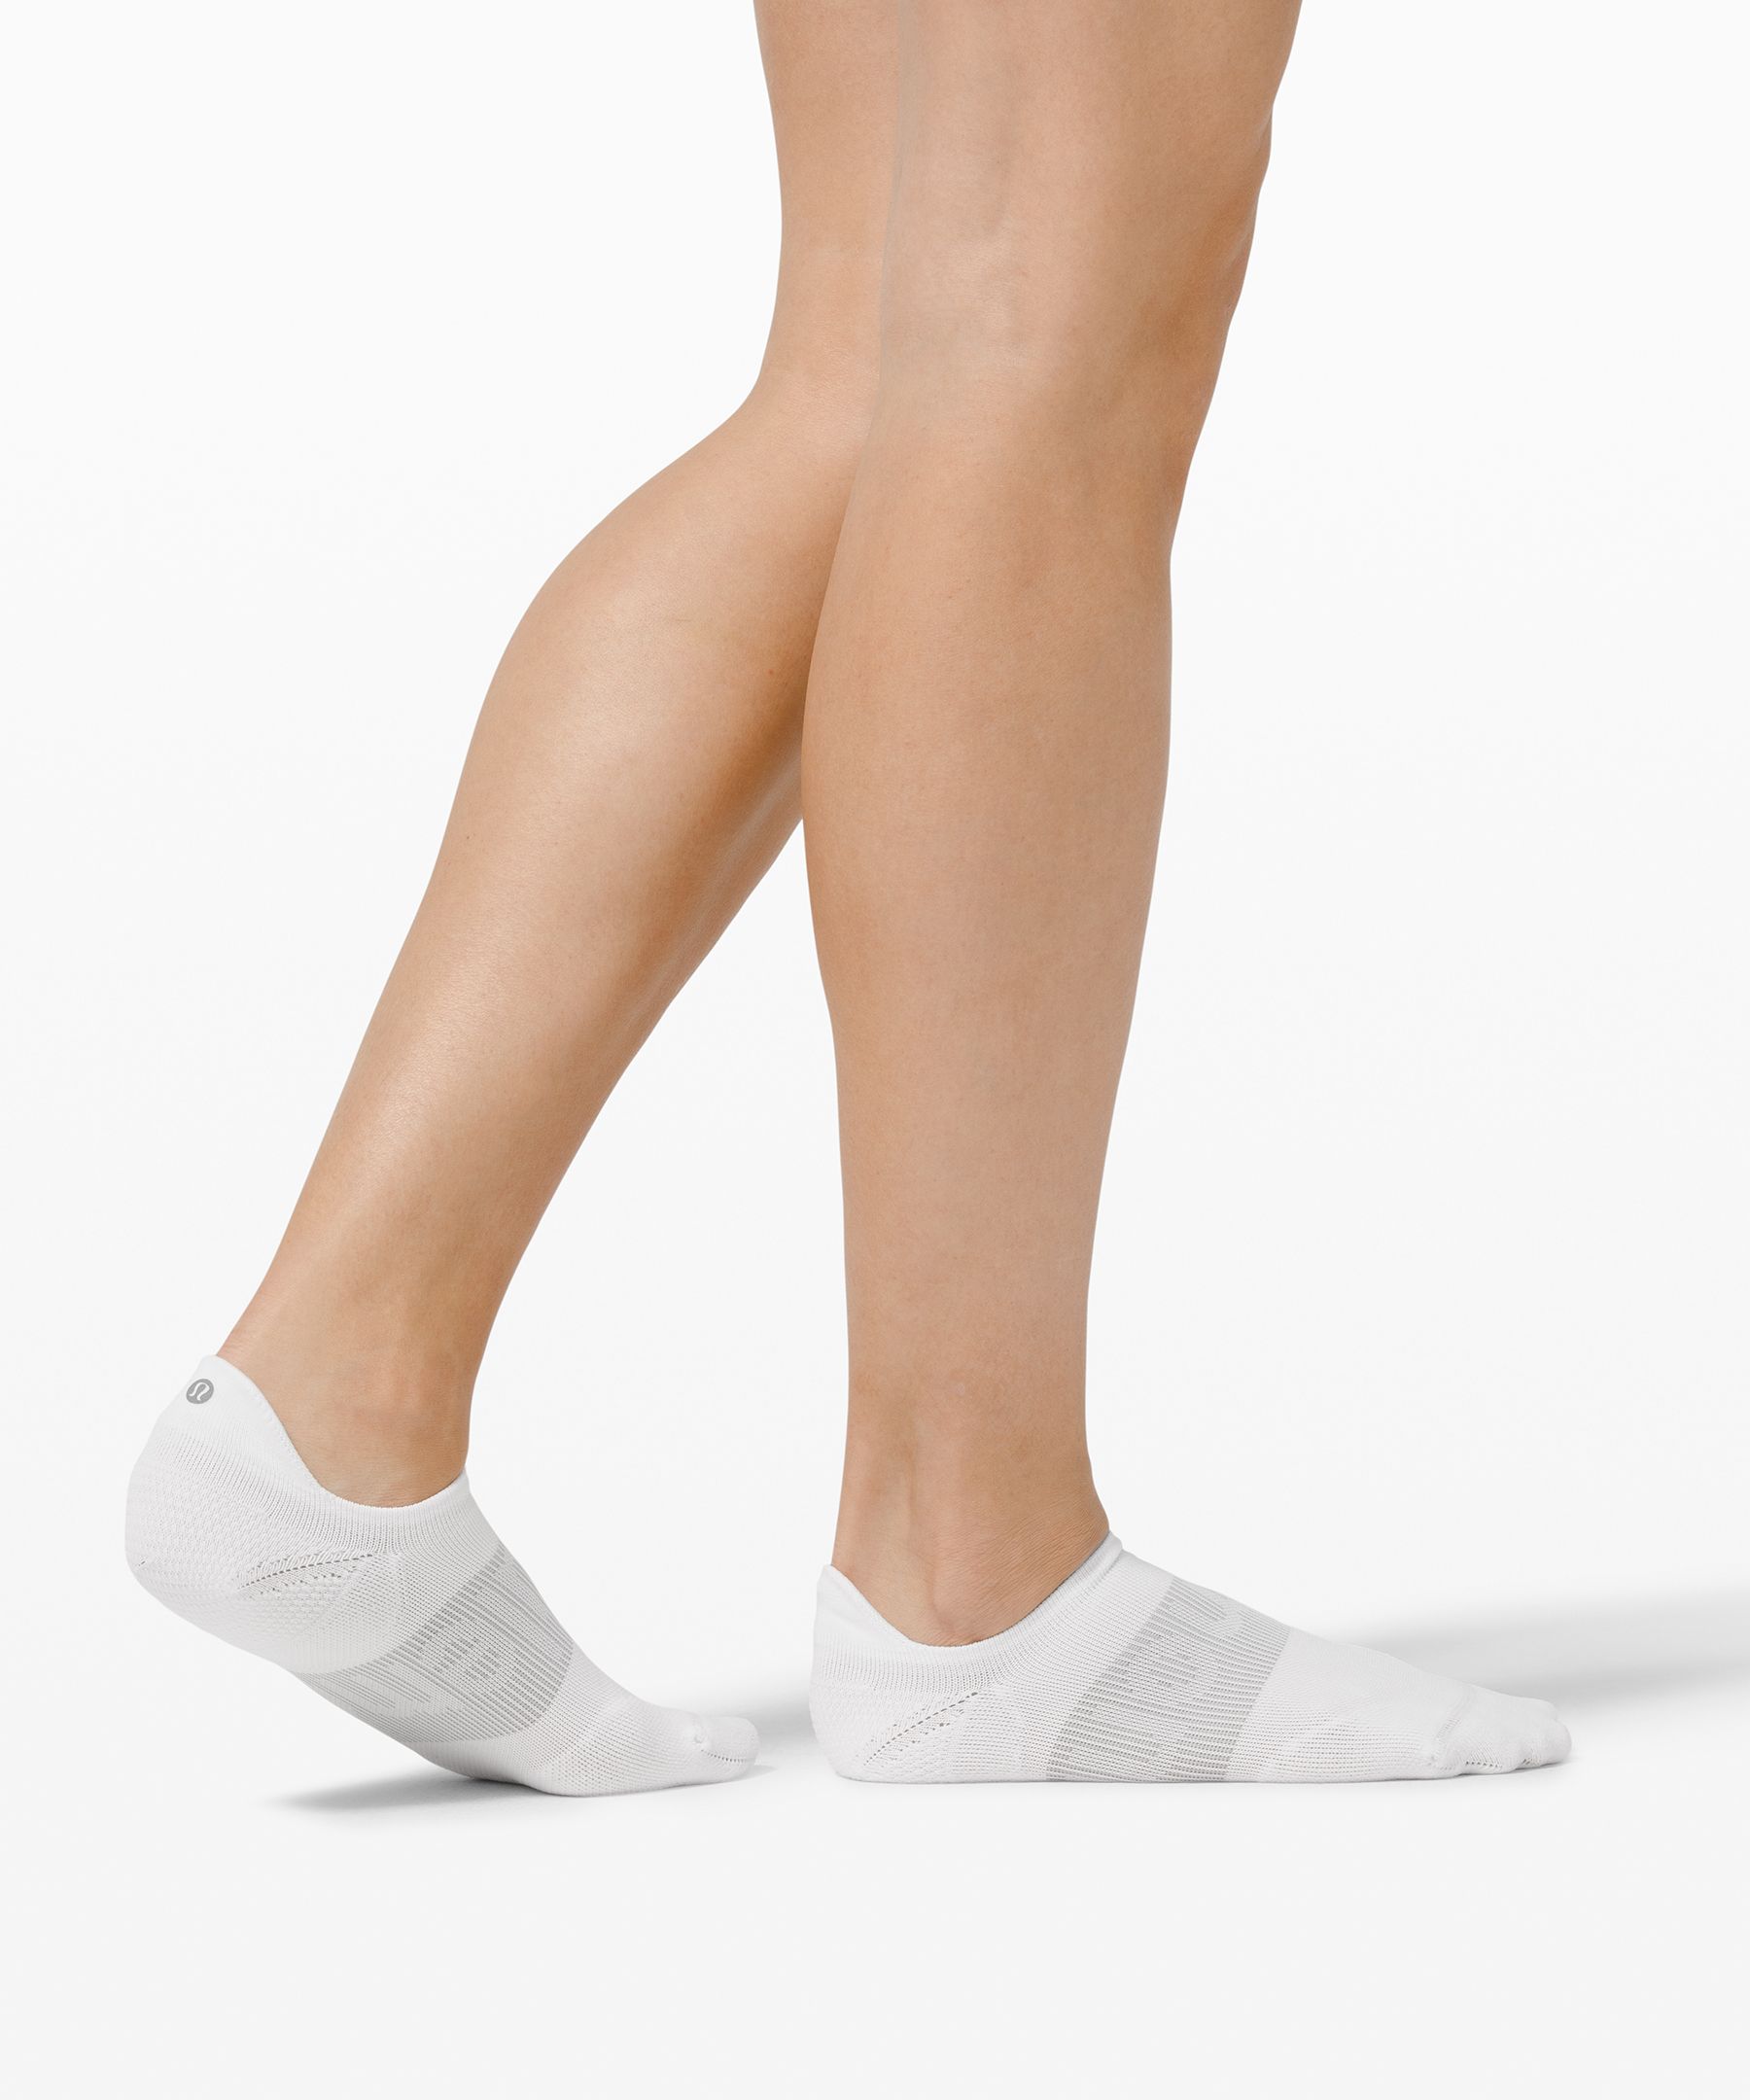 lululemon socks womens